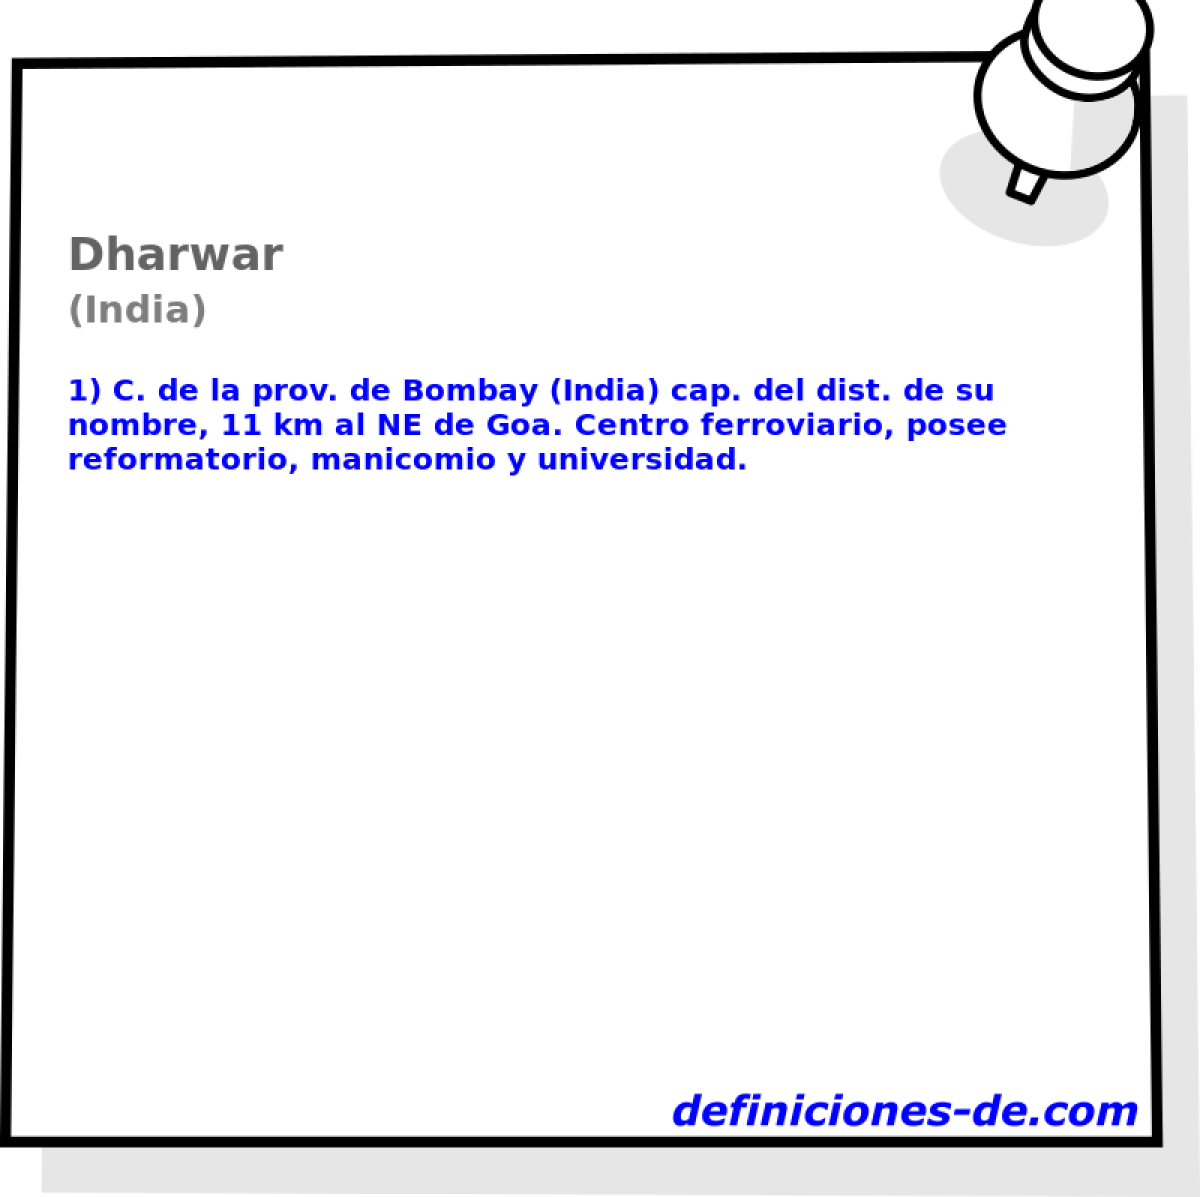 Dharwar (India)